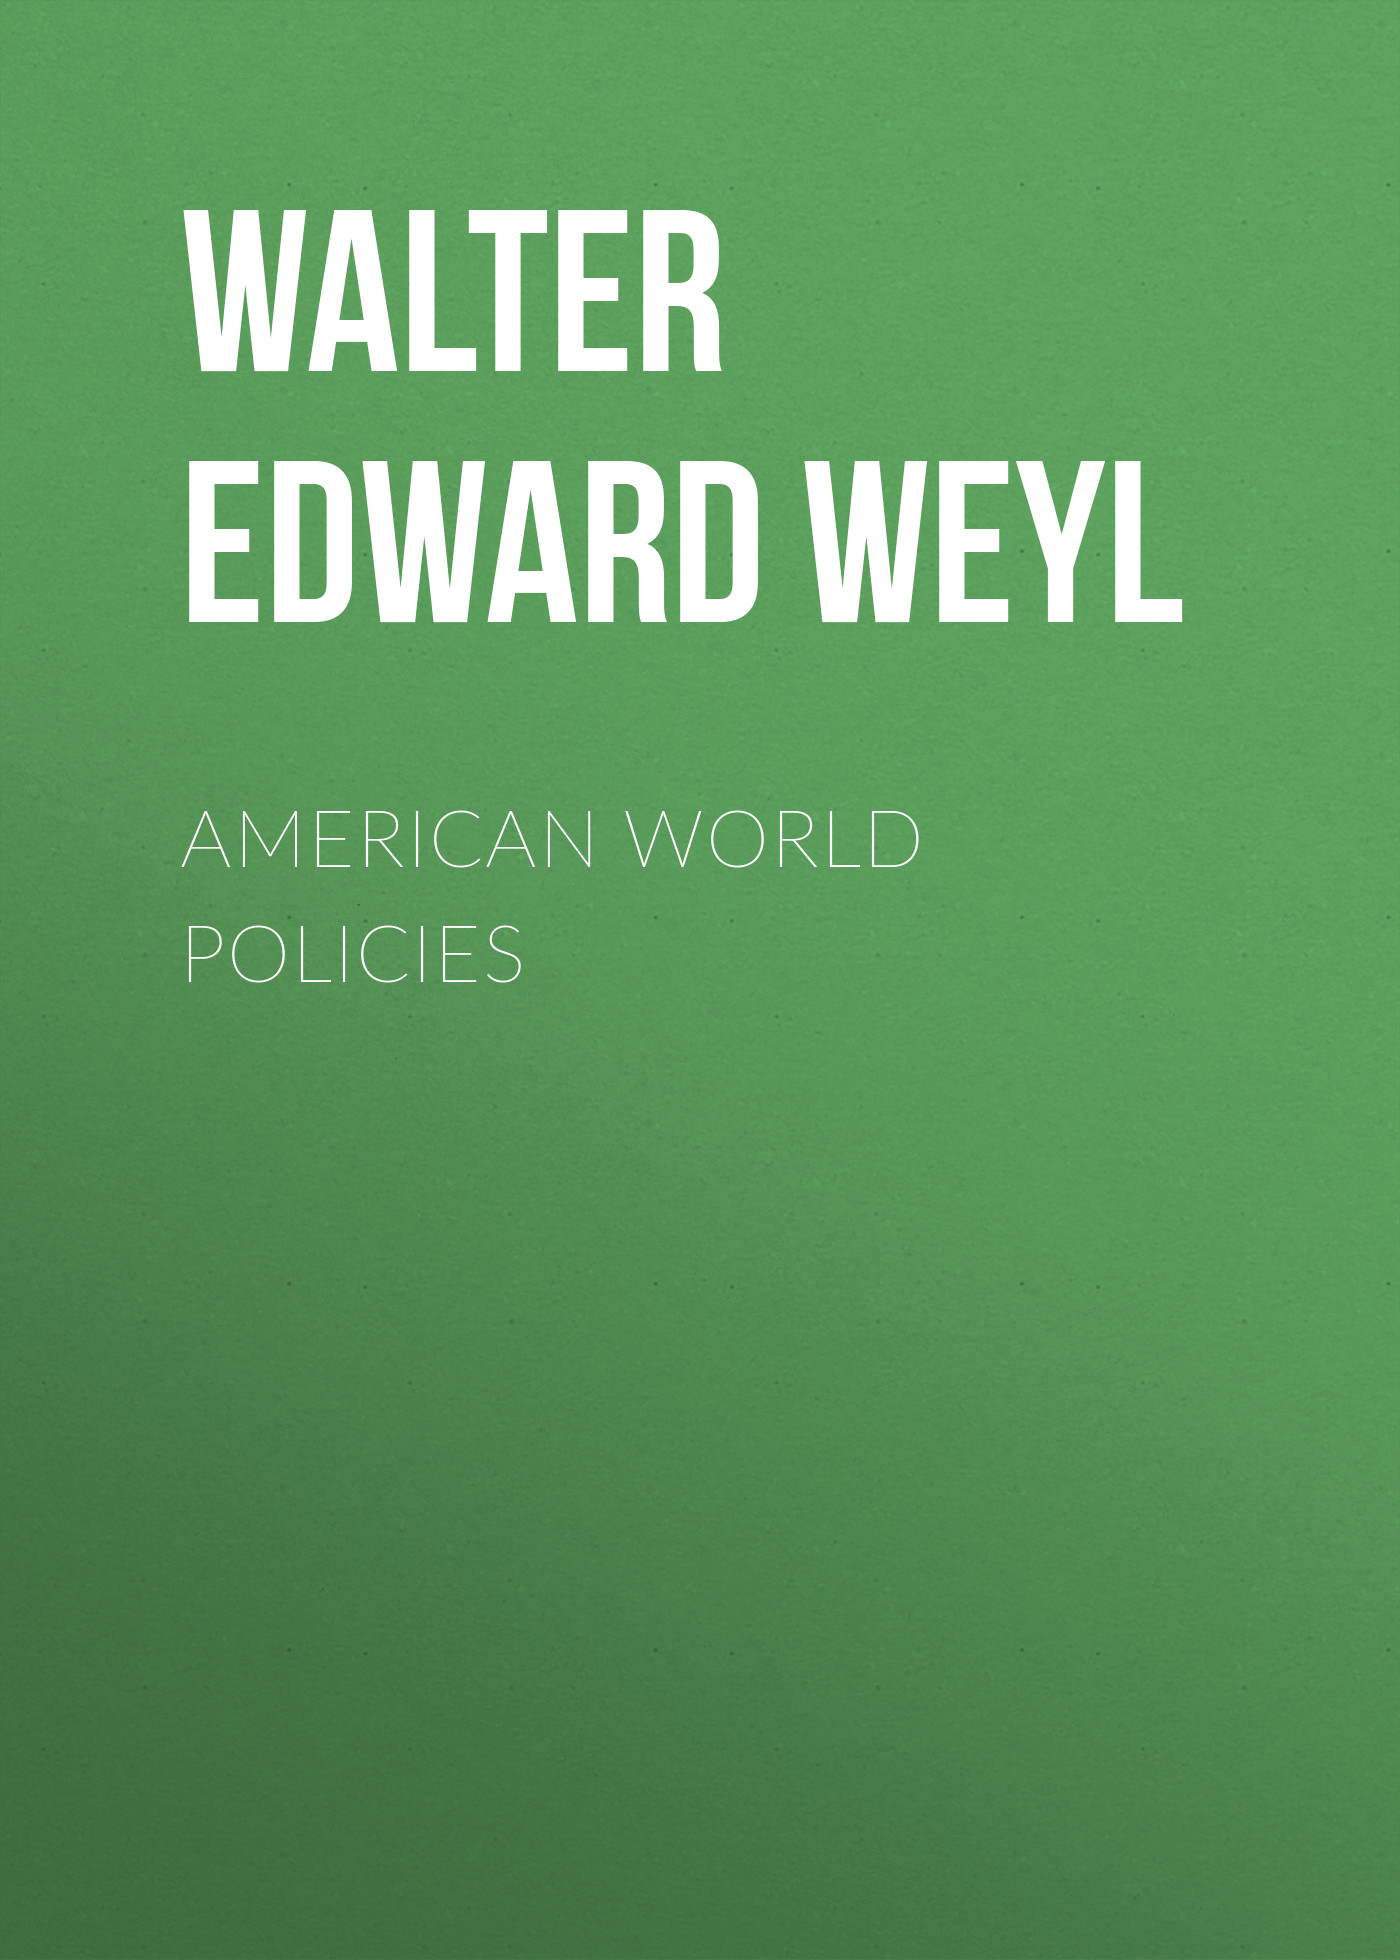 Книга American World Policies из серии , созданная Walter Edward Weyl, может относится к жанру Зарубежная старинная литература, Политика, политология, Юриспруденция, право. Стоимость книги American World Policies  с идентификатором 34336834 составляет 0 руб.